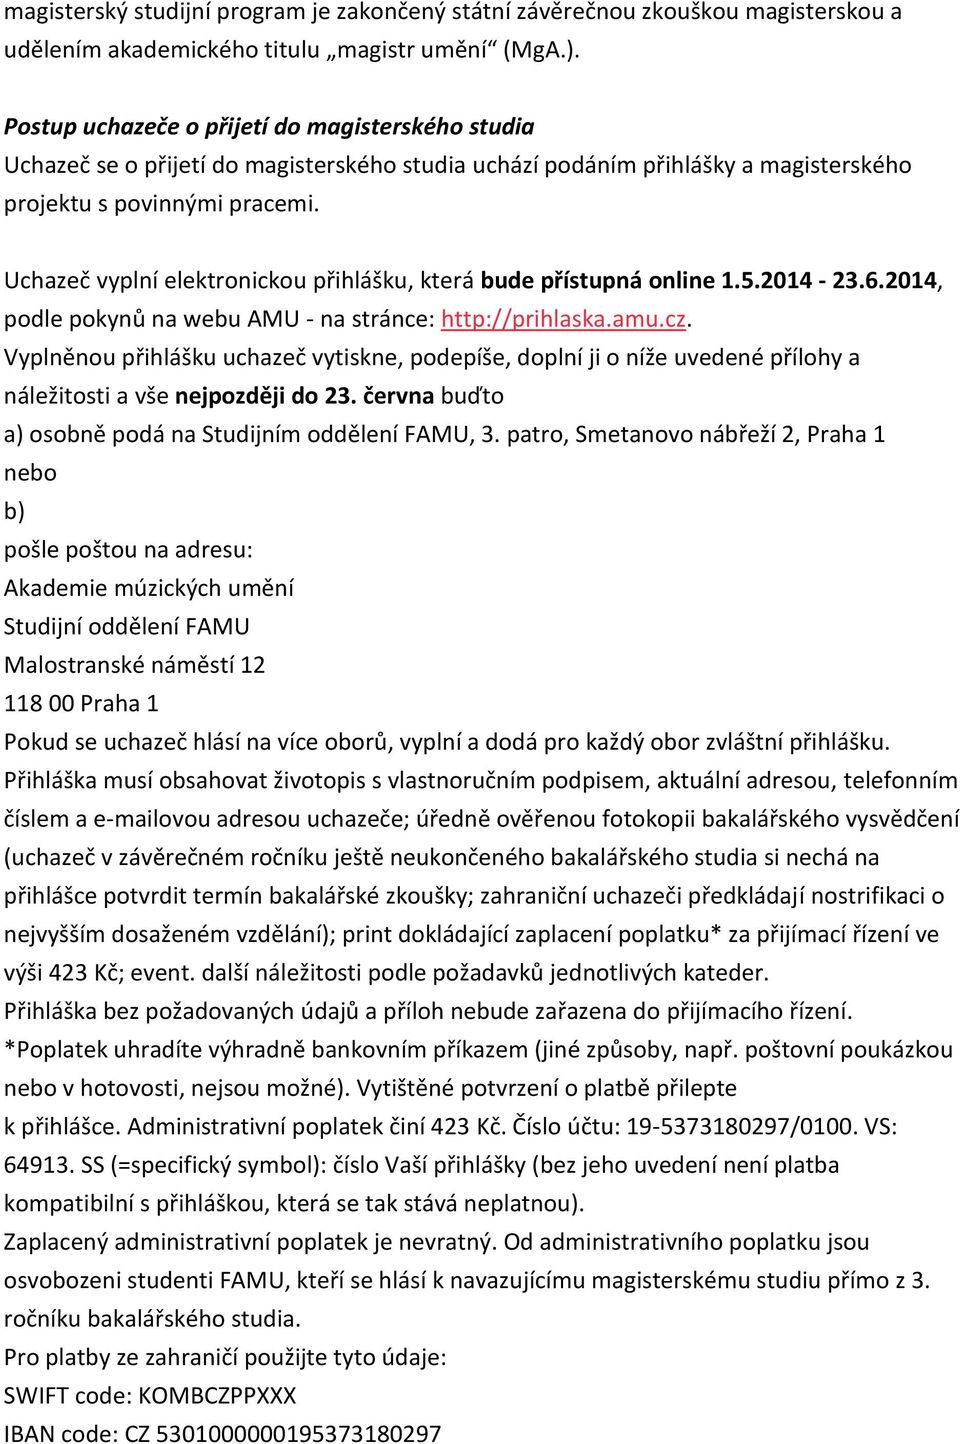 Uchazeč vyplní elektronickou přihlášku, která bude přístupná online 1.5.2014-23.6.2014, podle pokynů na webu AMU - na stránce: http://prihlaska.amu.cz.